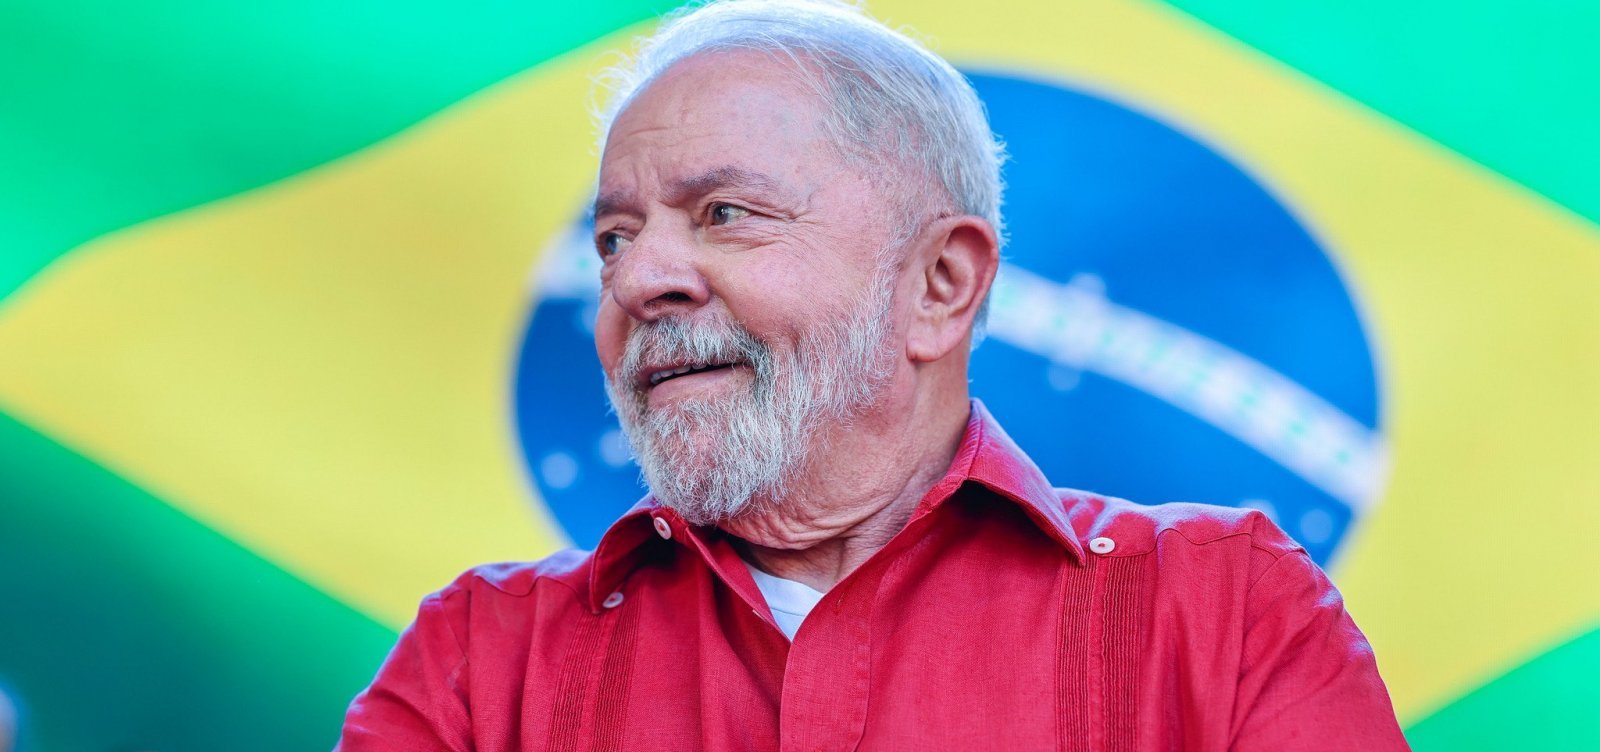 7 de Setembro: Governo Lula conecta Forças Armadas à democracia com cores verde e amarelo